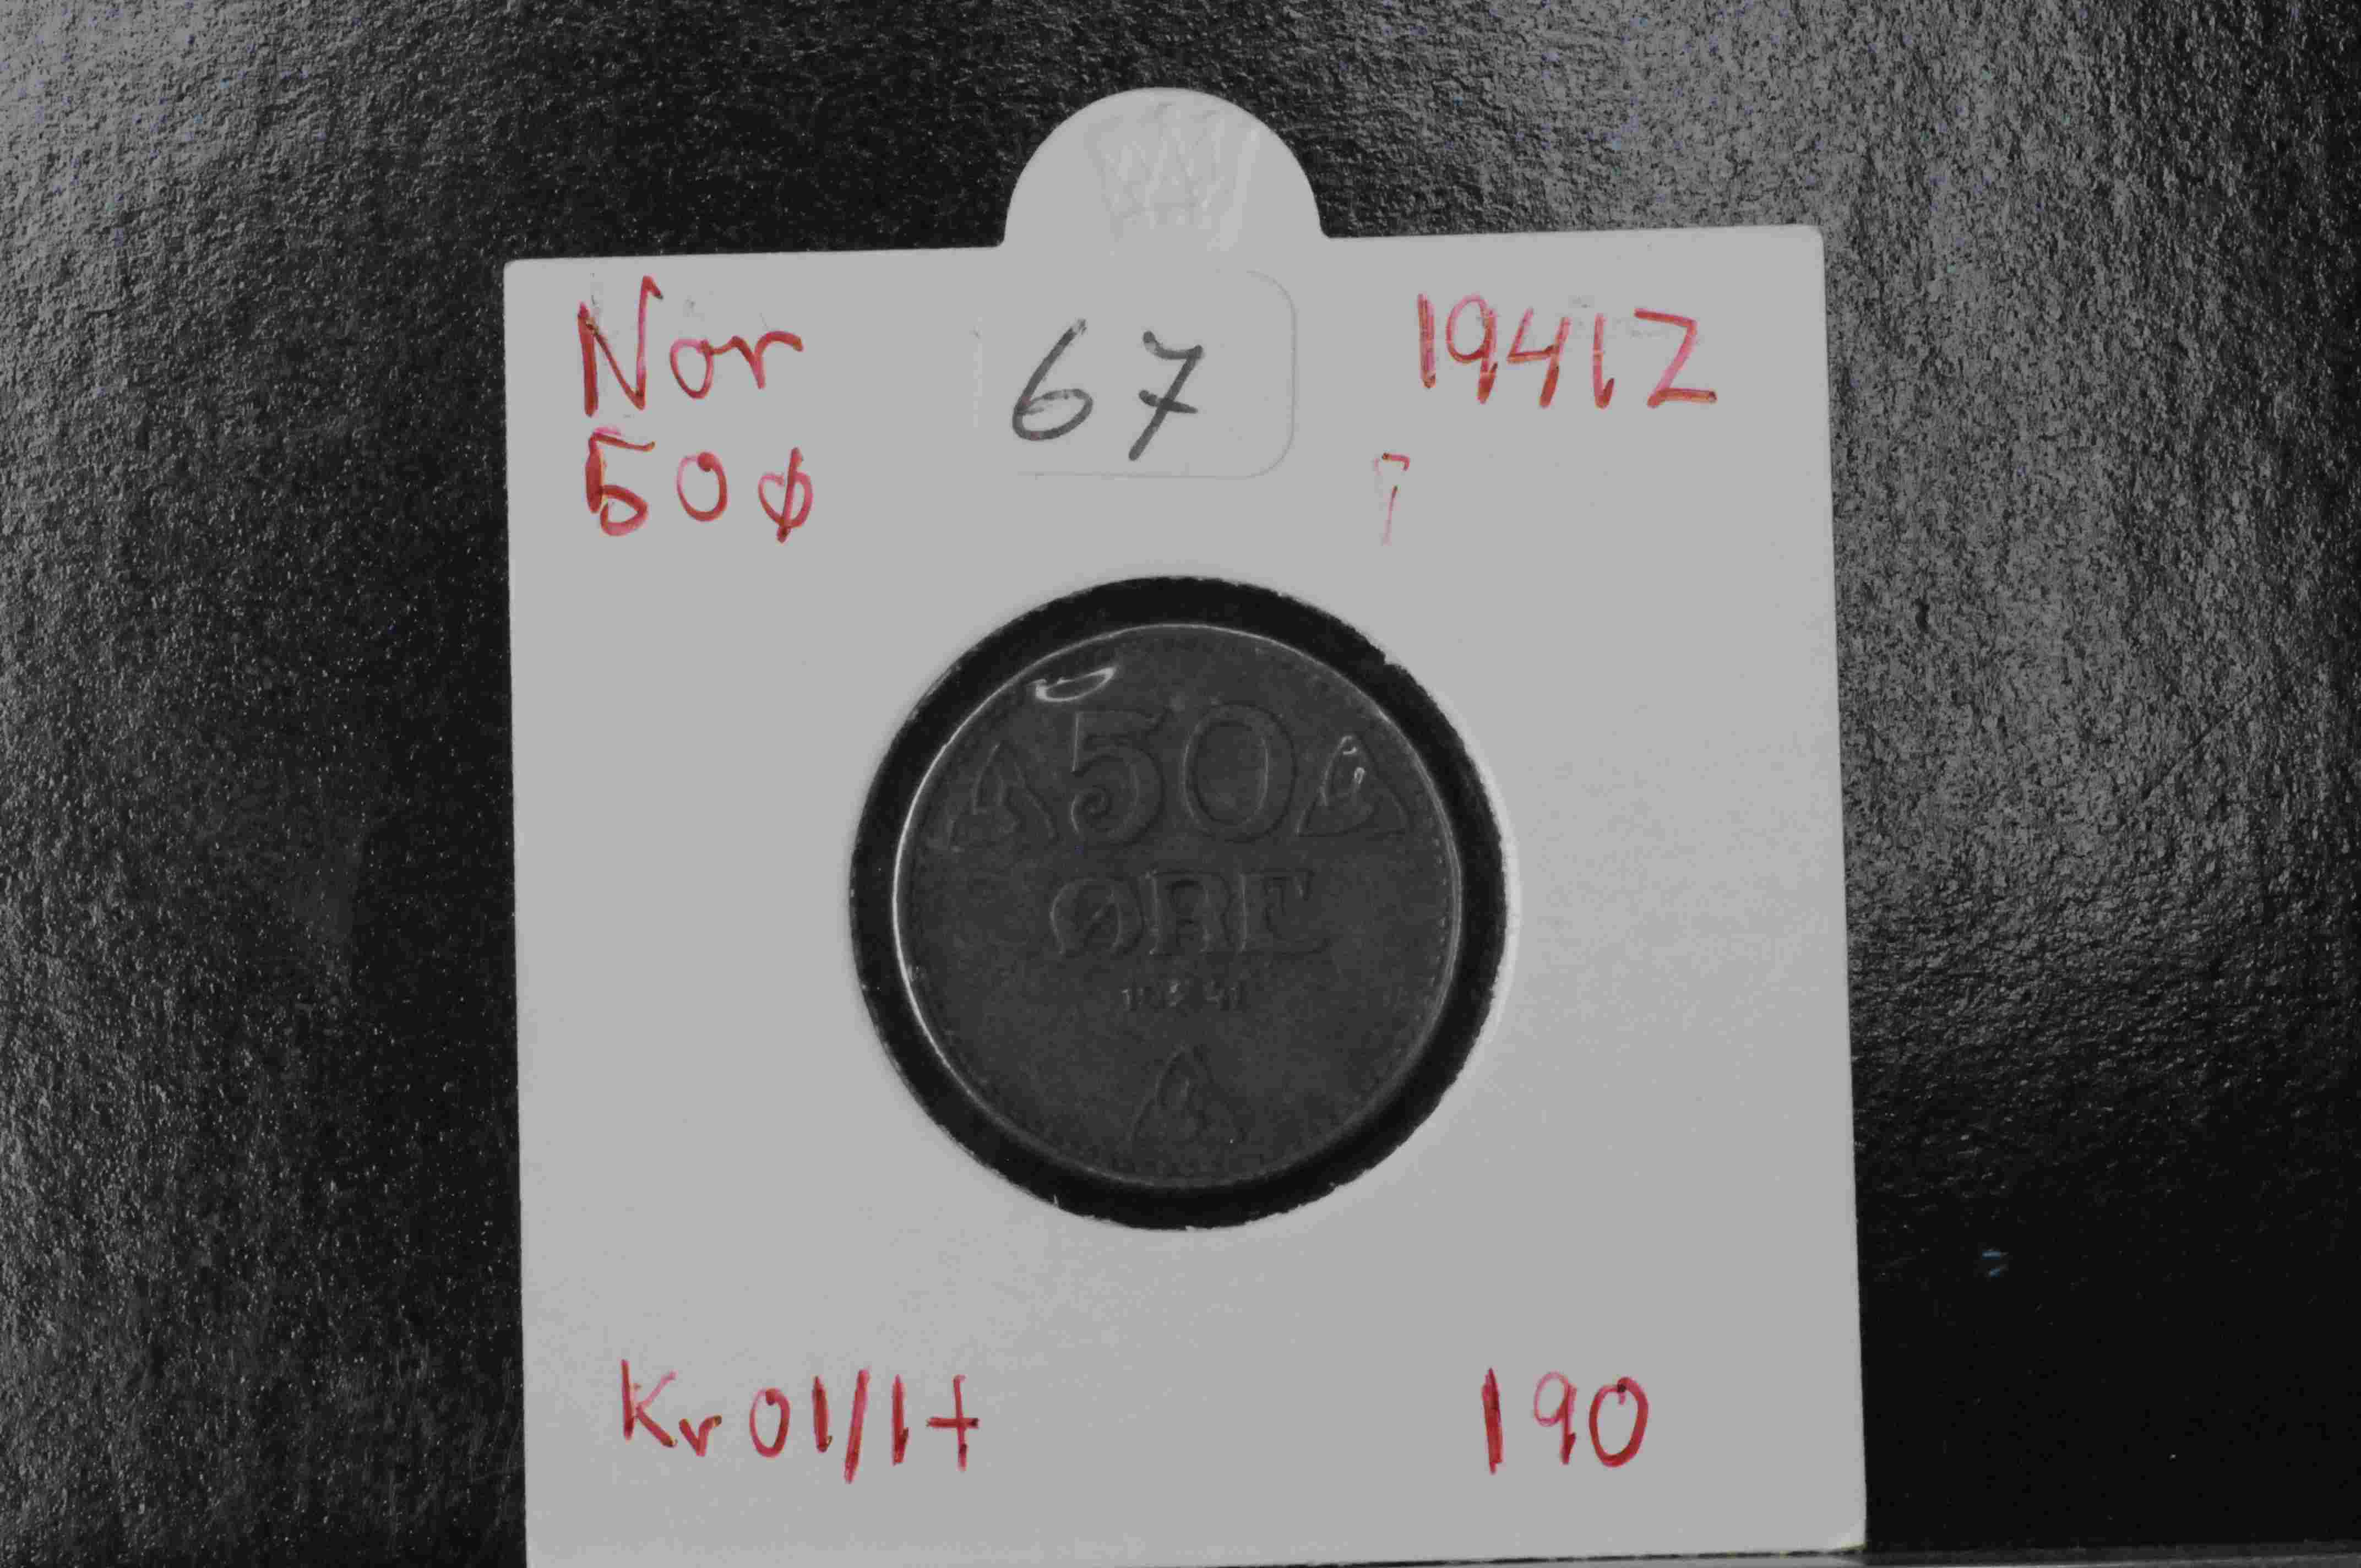 50ø 1941Z kv01/1+